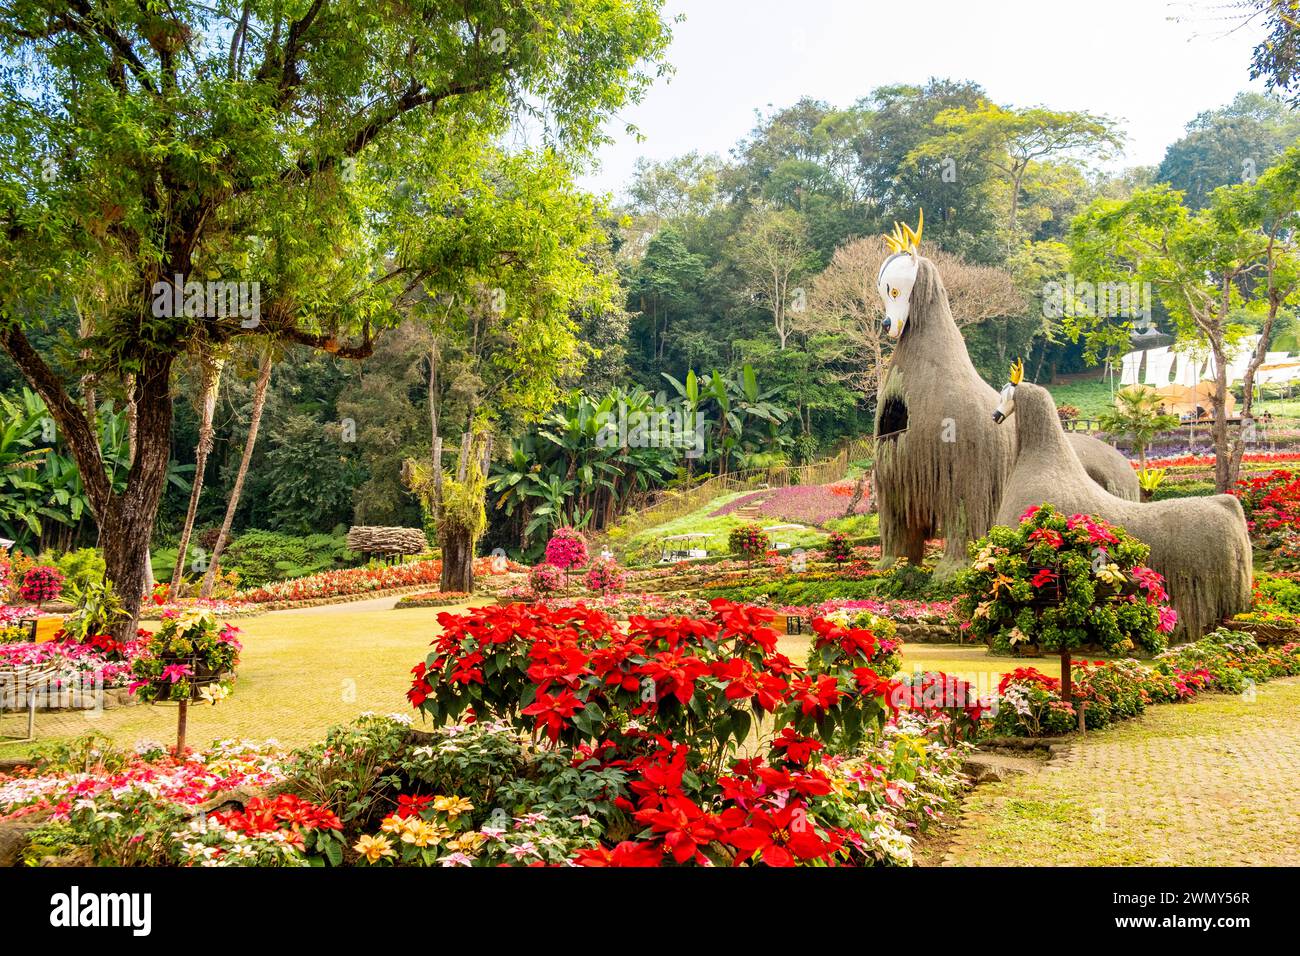 Thailand, Chiang Rai province, surroundings of Mae Salong, Doi Tung Royal Garden or Mae Fan Luang garden Stock Photo